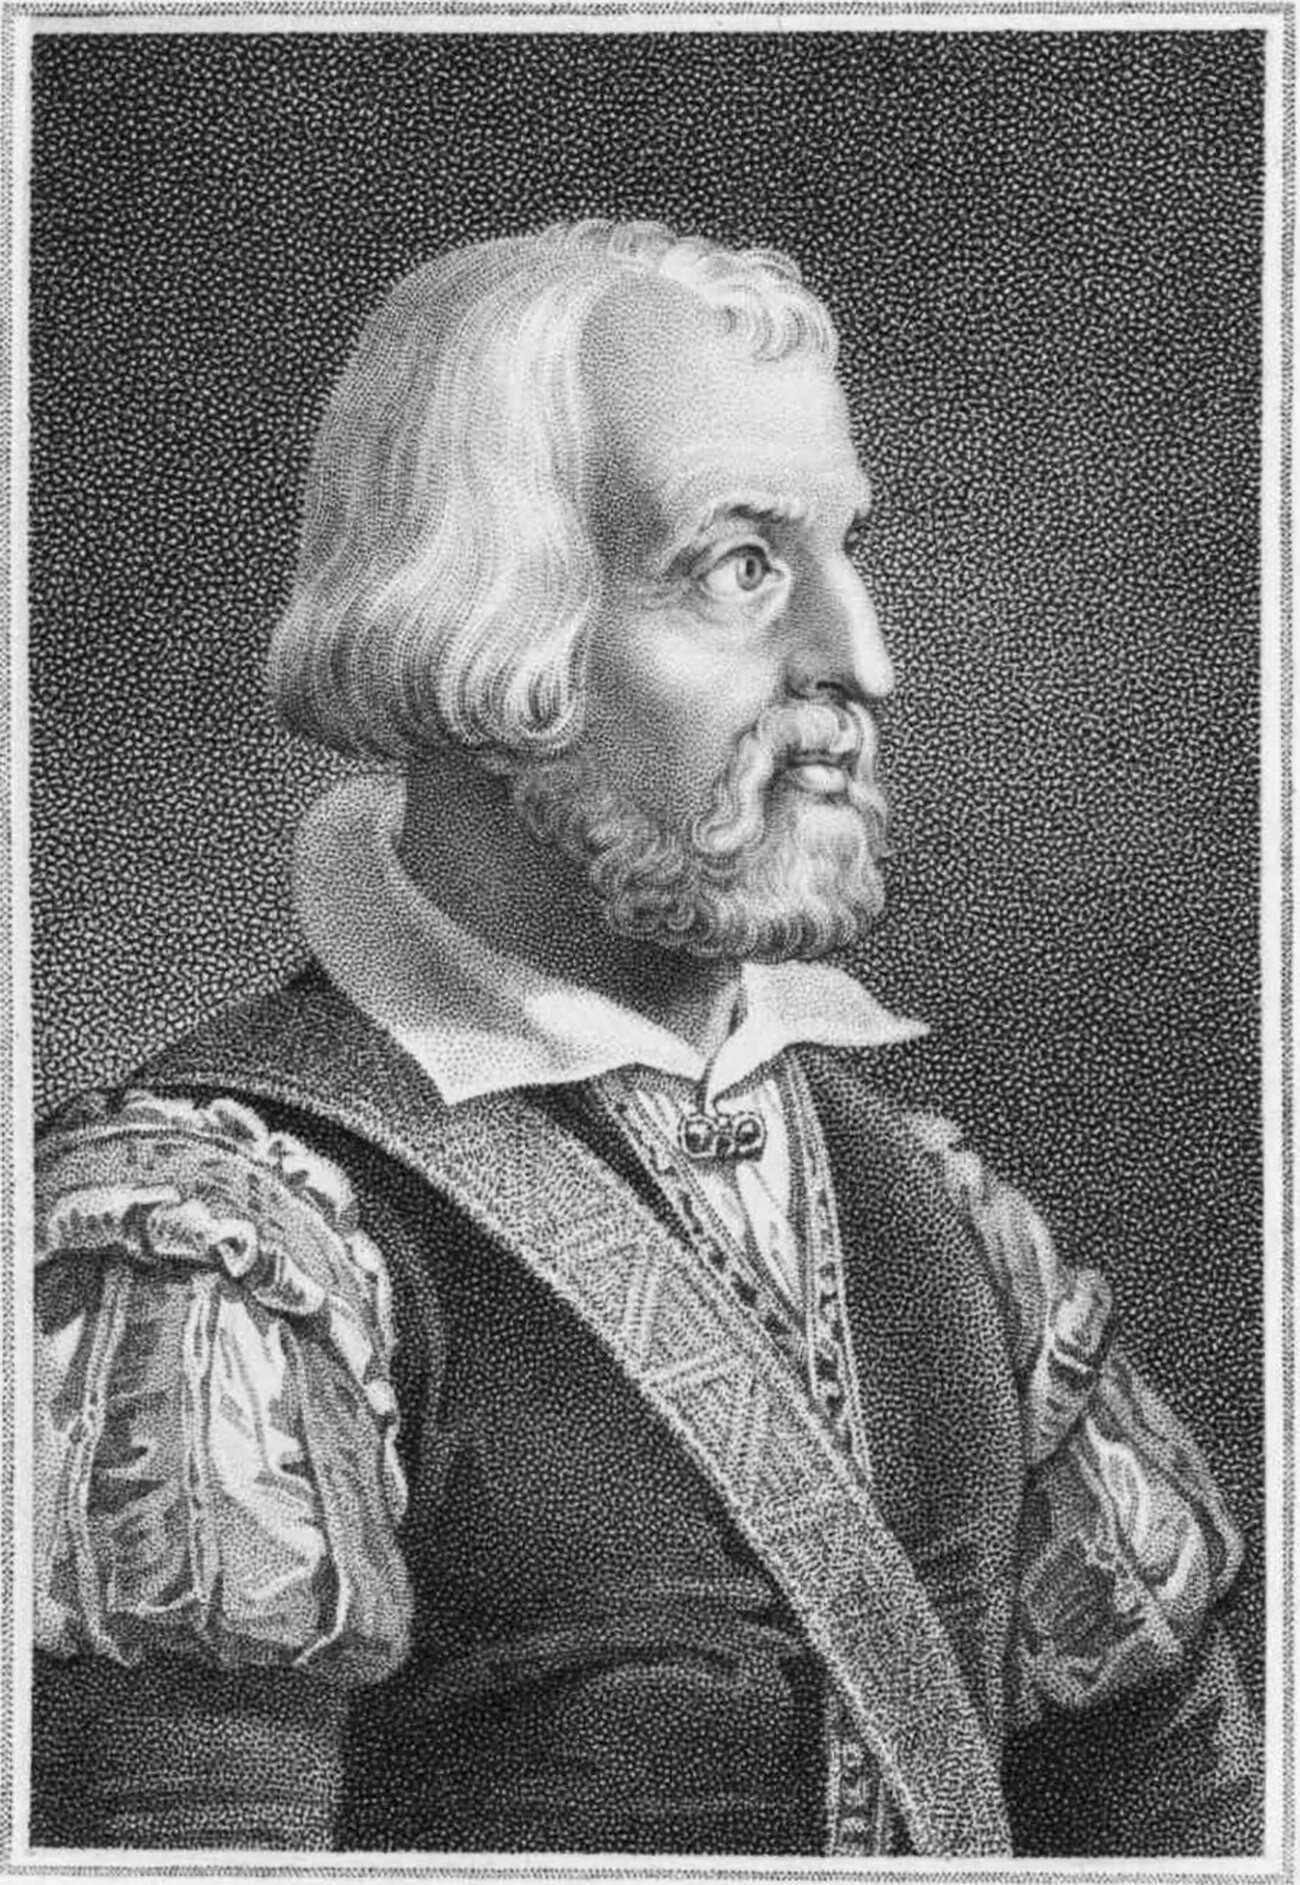 Sigismund von Herberstein (1486-1566), diplomatico e scrittore austriaco. Fu ambasciatore in Russia e pubblicò nel 1549 il “Rerum Moscoviticarum commentarii” corredato di mappe 